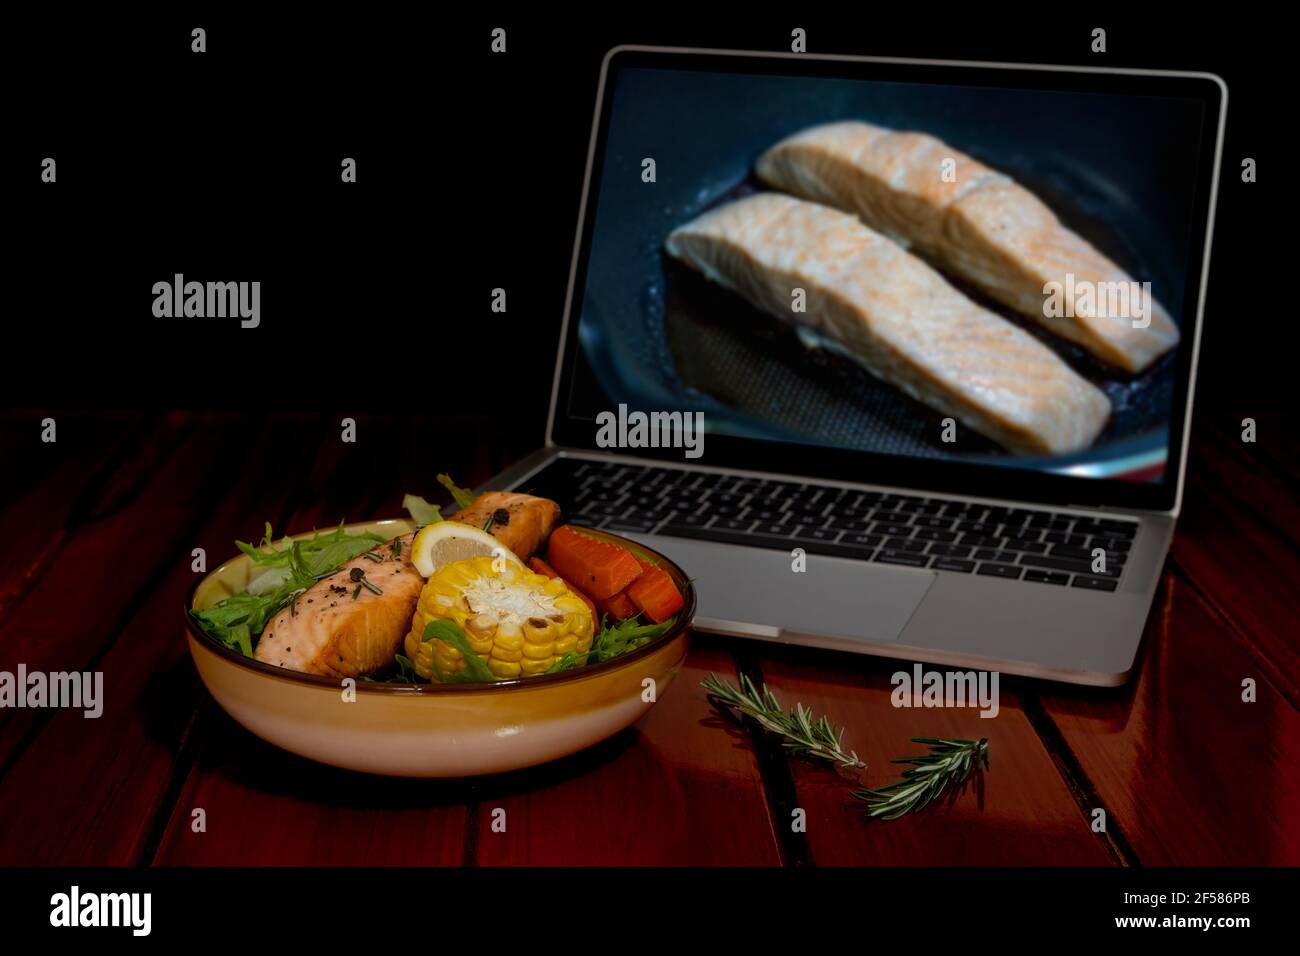 Salade de saumon grillé, laitue, maïs grillé, carotte, citron, Romarin. Trouvez des recettes de cuisine à partir d'un ordinateur portable via Internet. Banque D'Images